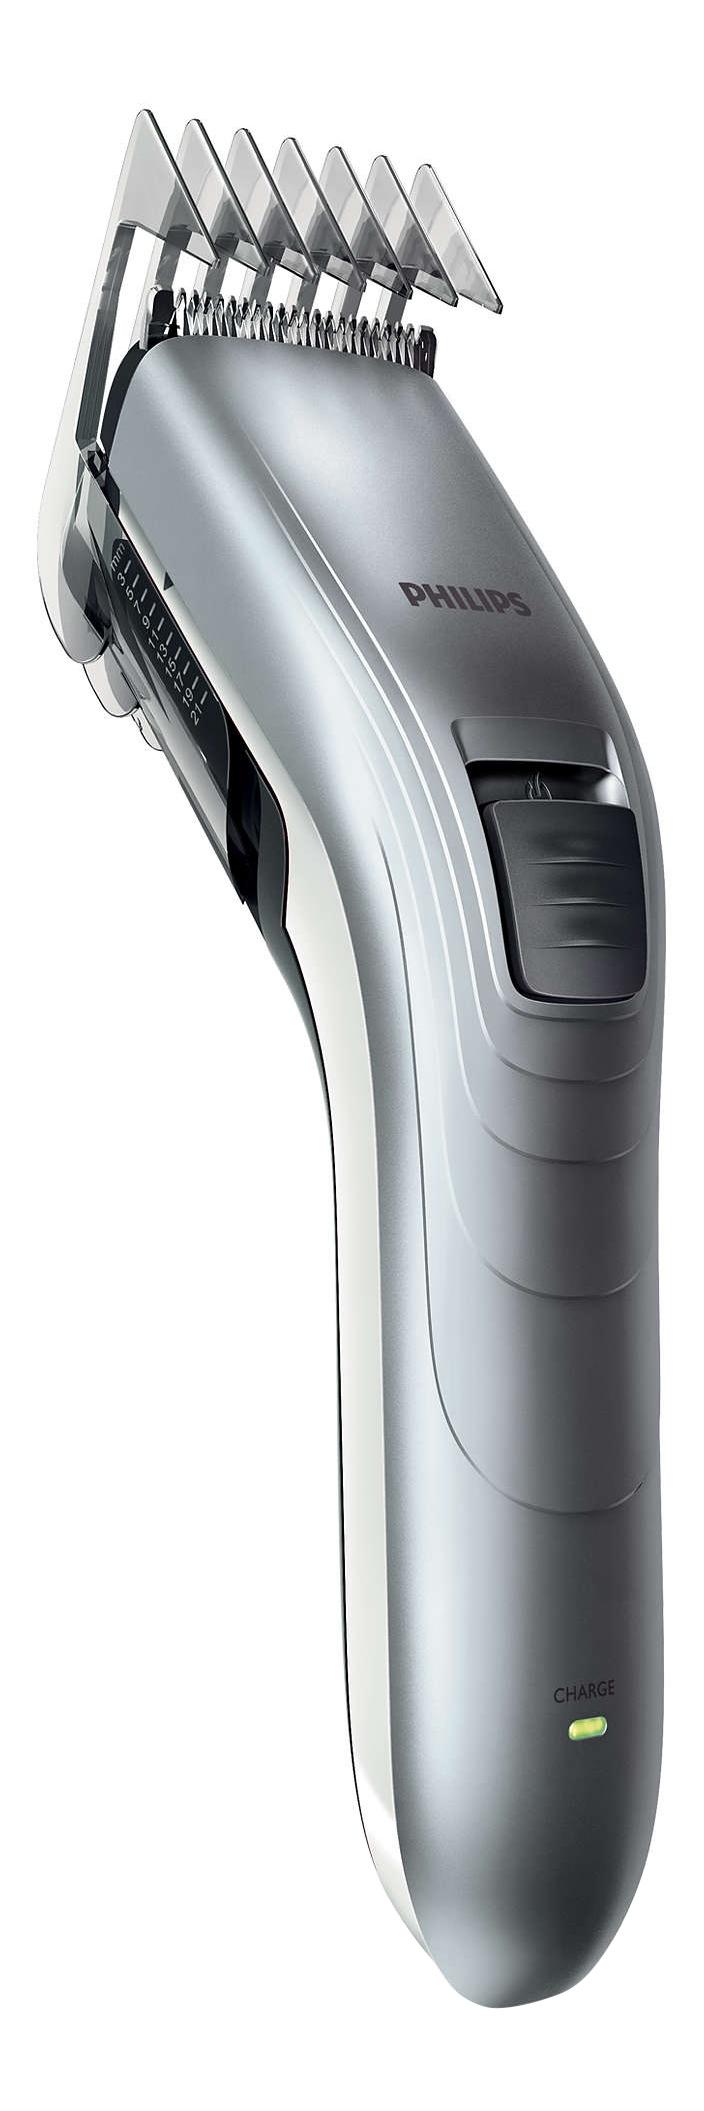 Машинка для стрижки волос Philips Series 3000 QC5130/ 15 машинка для стрижки волос philips hc3525 15